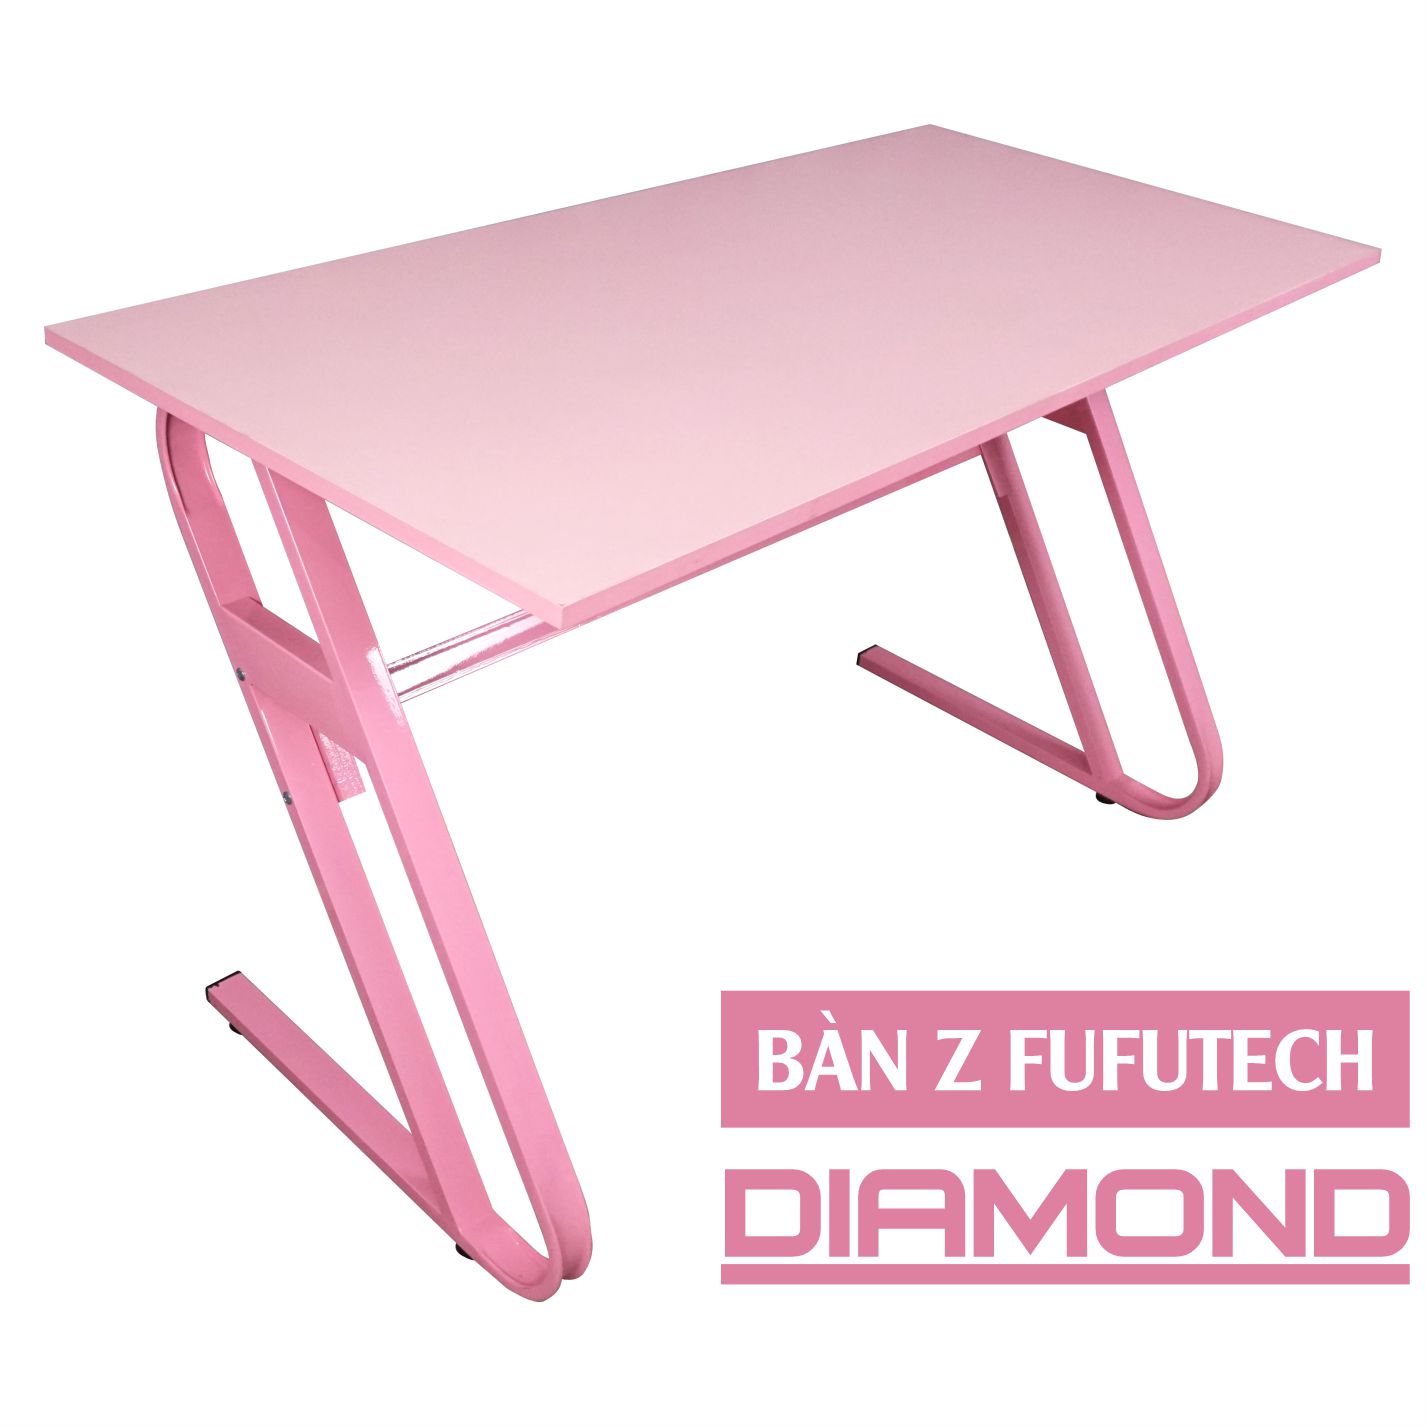 Bàn màu hồng FUFUTECH Diamond 120x60 cm dùng làm bàn để máy tính, livestream, chơi game, làm việc